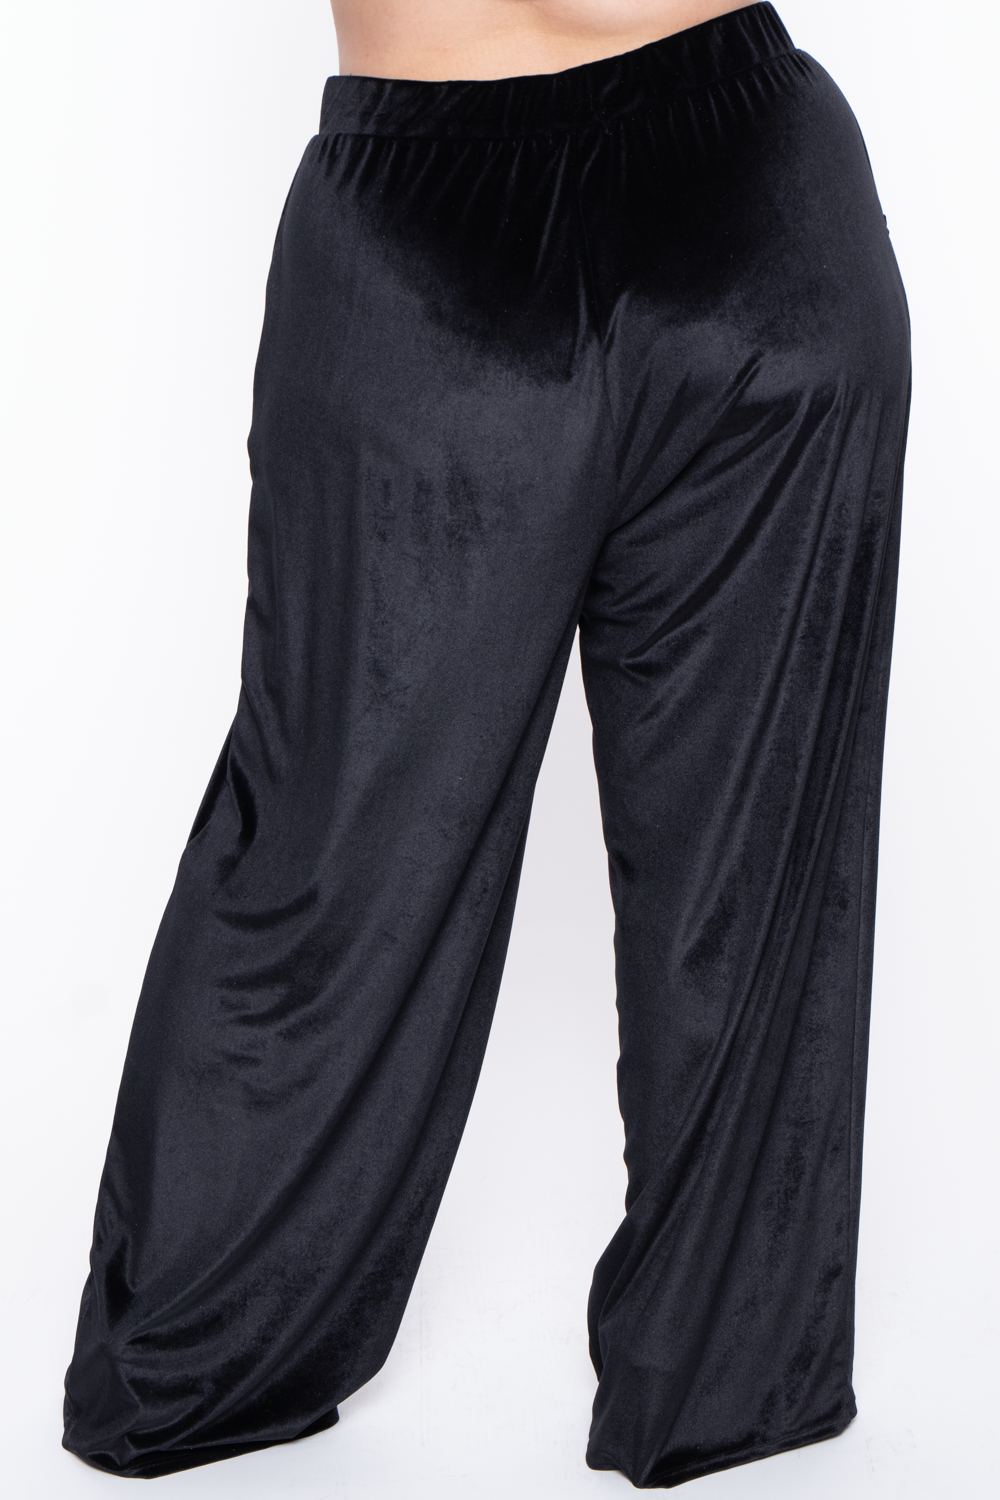 Plus Size Eloise Velour Bandeau & Pant Set - Black - Curvy Sense